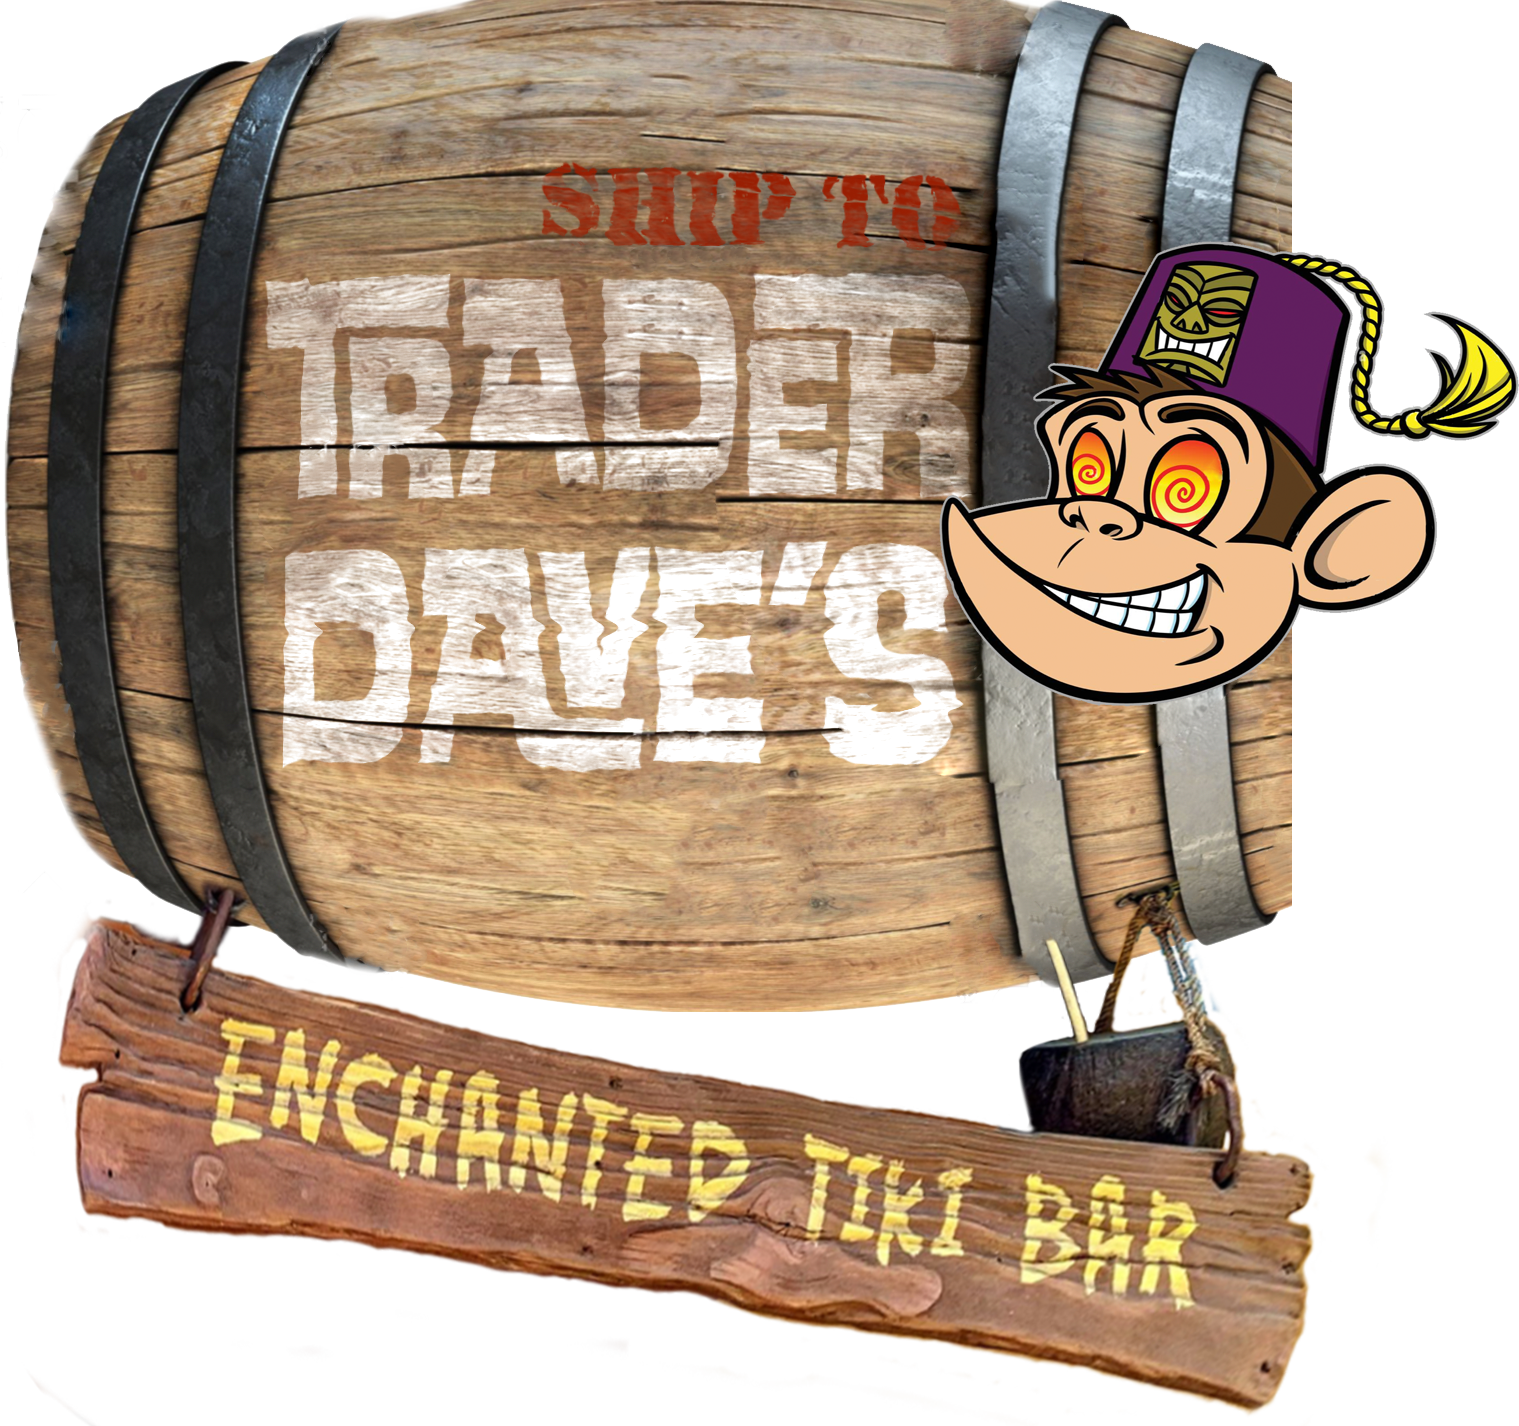 Trader Dave's Bar